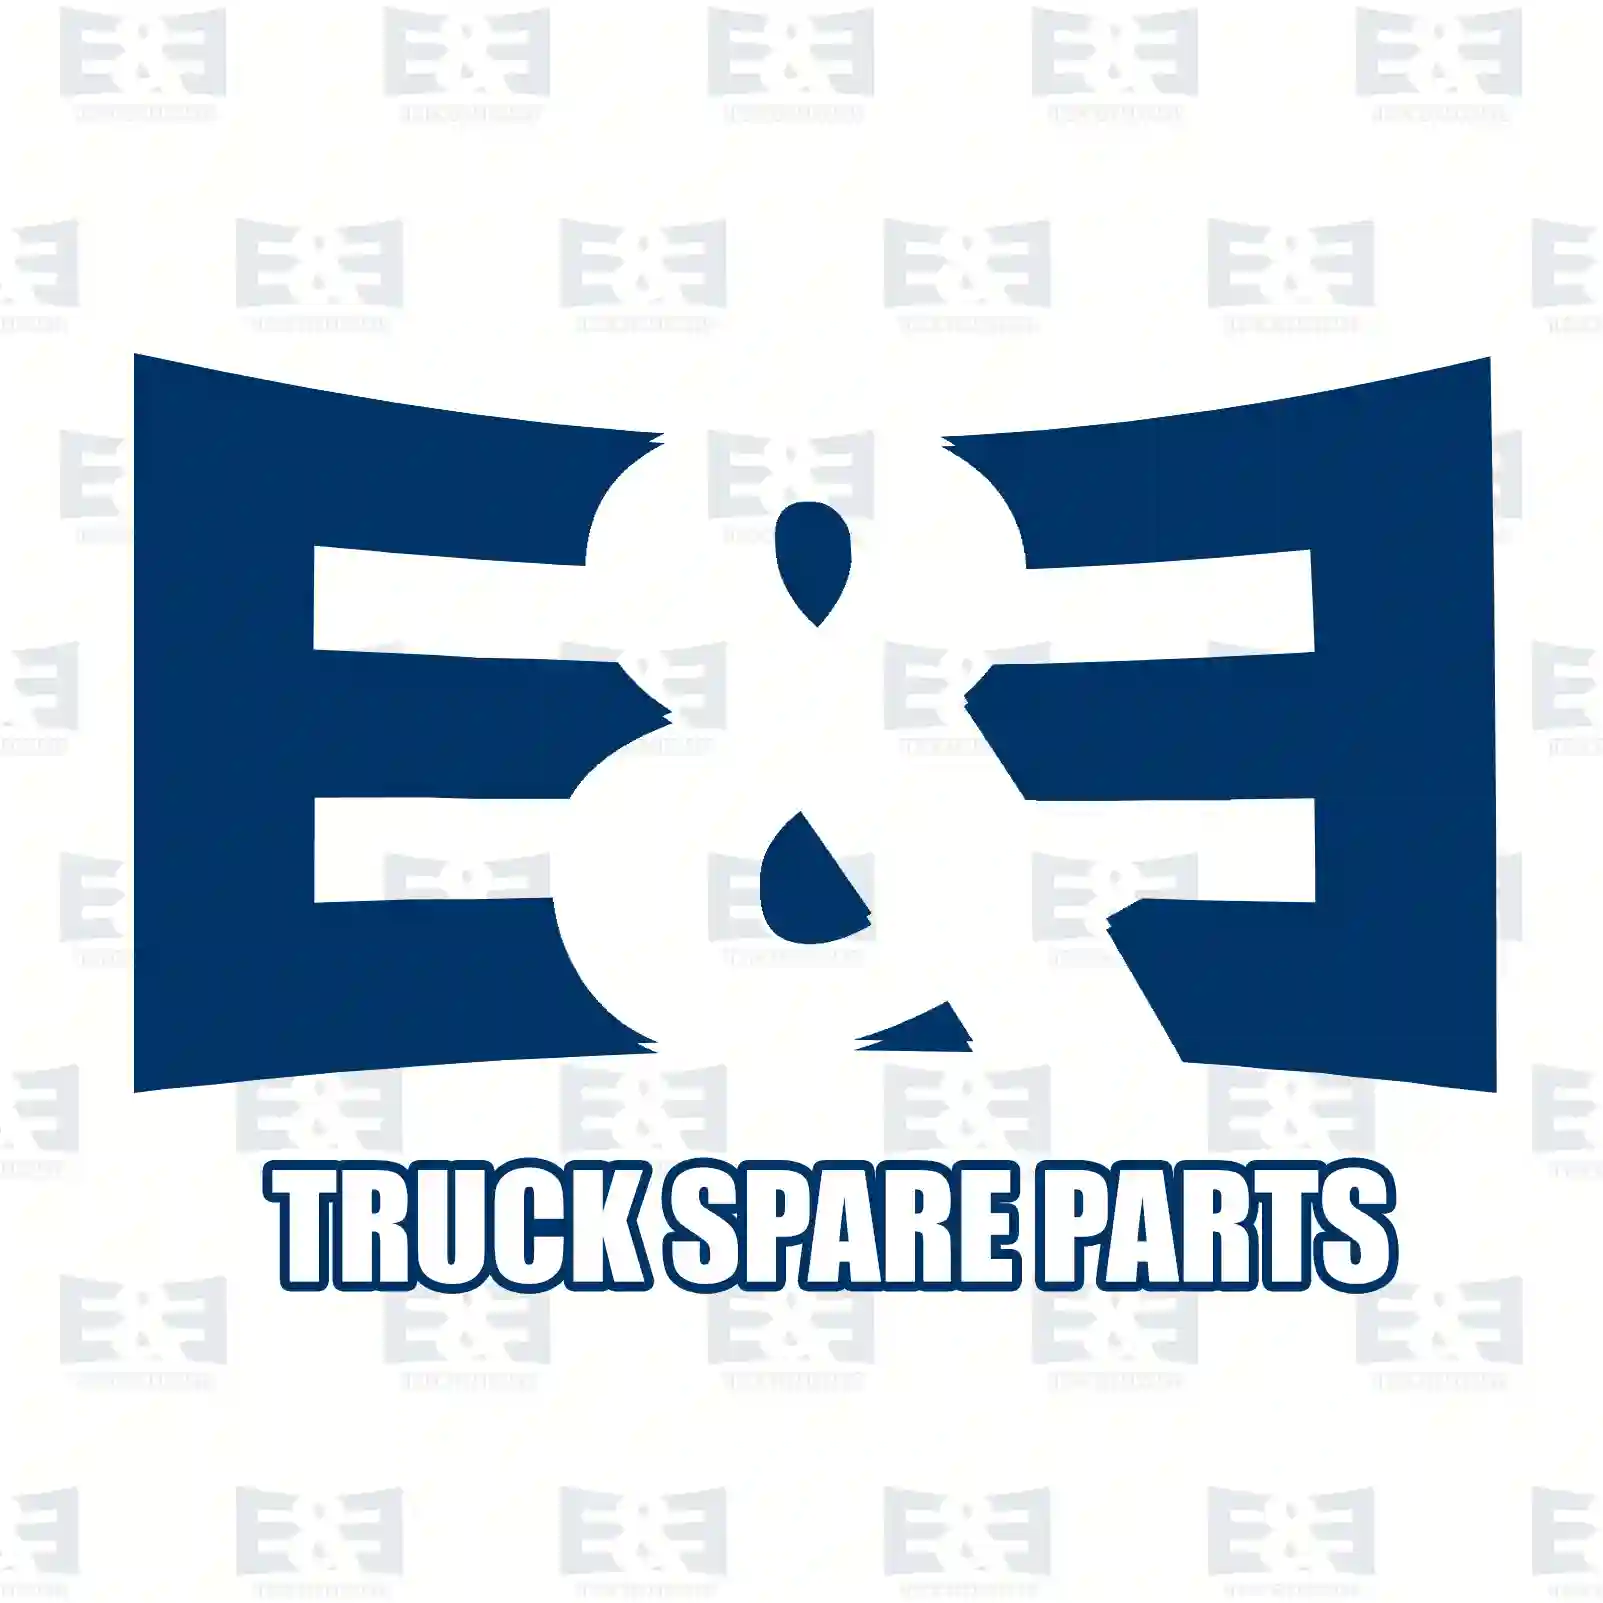 Guide rail, 2E2292392, 3147250501, 6737250001, ZG60868-0008 ||  2E2292392 E&E Truck Spare Parts | Truck Spare Parts, Auotomotive Spare Parts Guide rail, 2E2292392, 3147250501, 6737250001, ZG60868-0008 ||  2E2292392 E&E Truck Spare Parts | Truck Spare Parts, Auotomotive Spare Parts